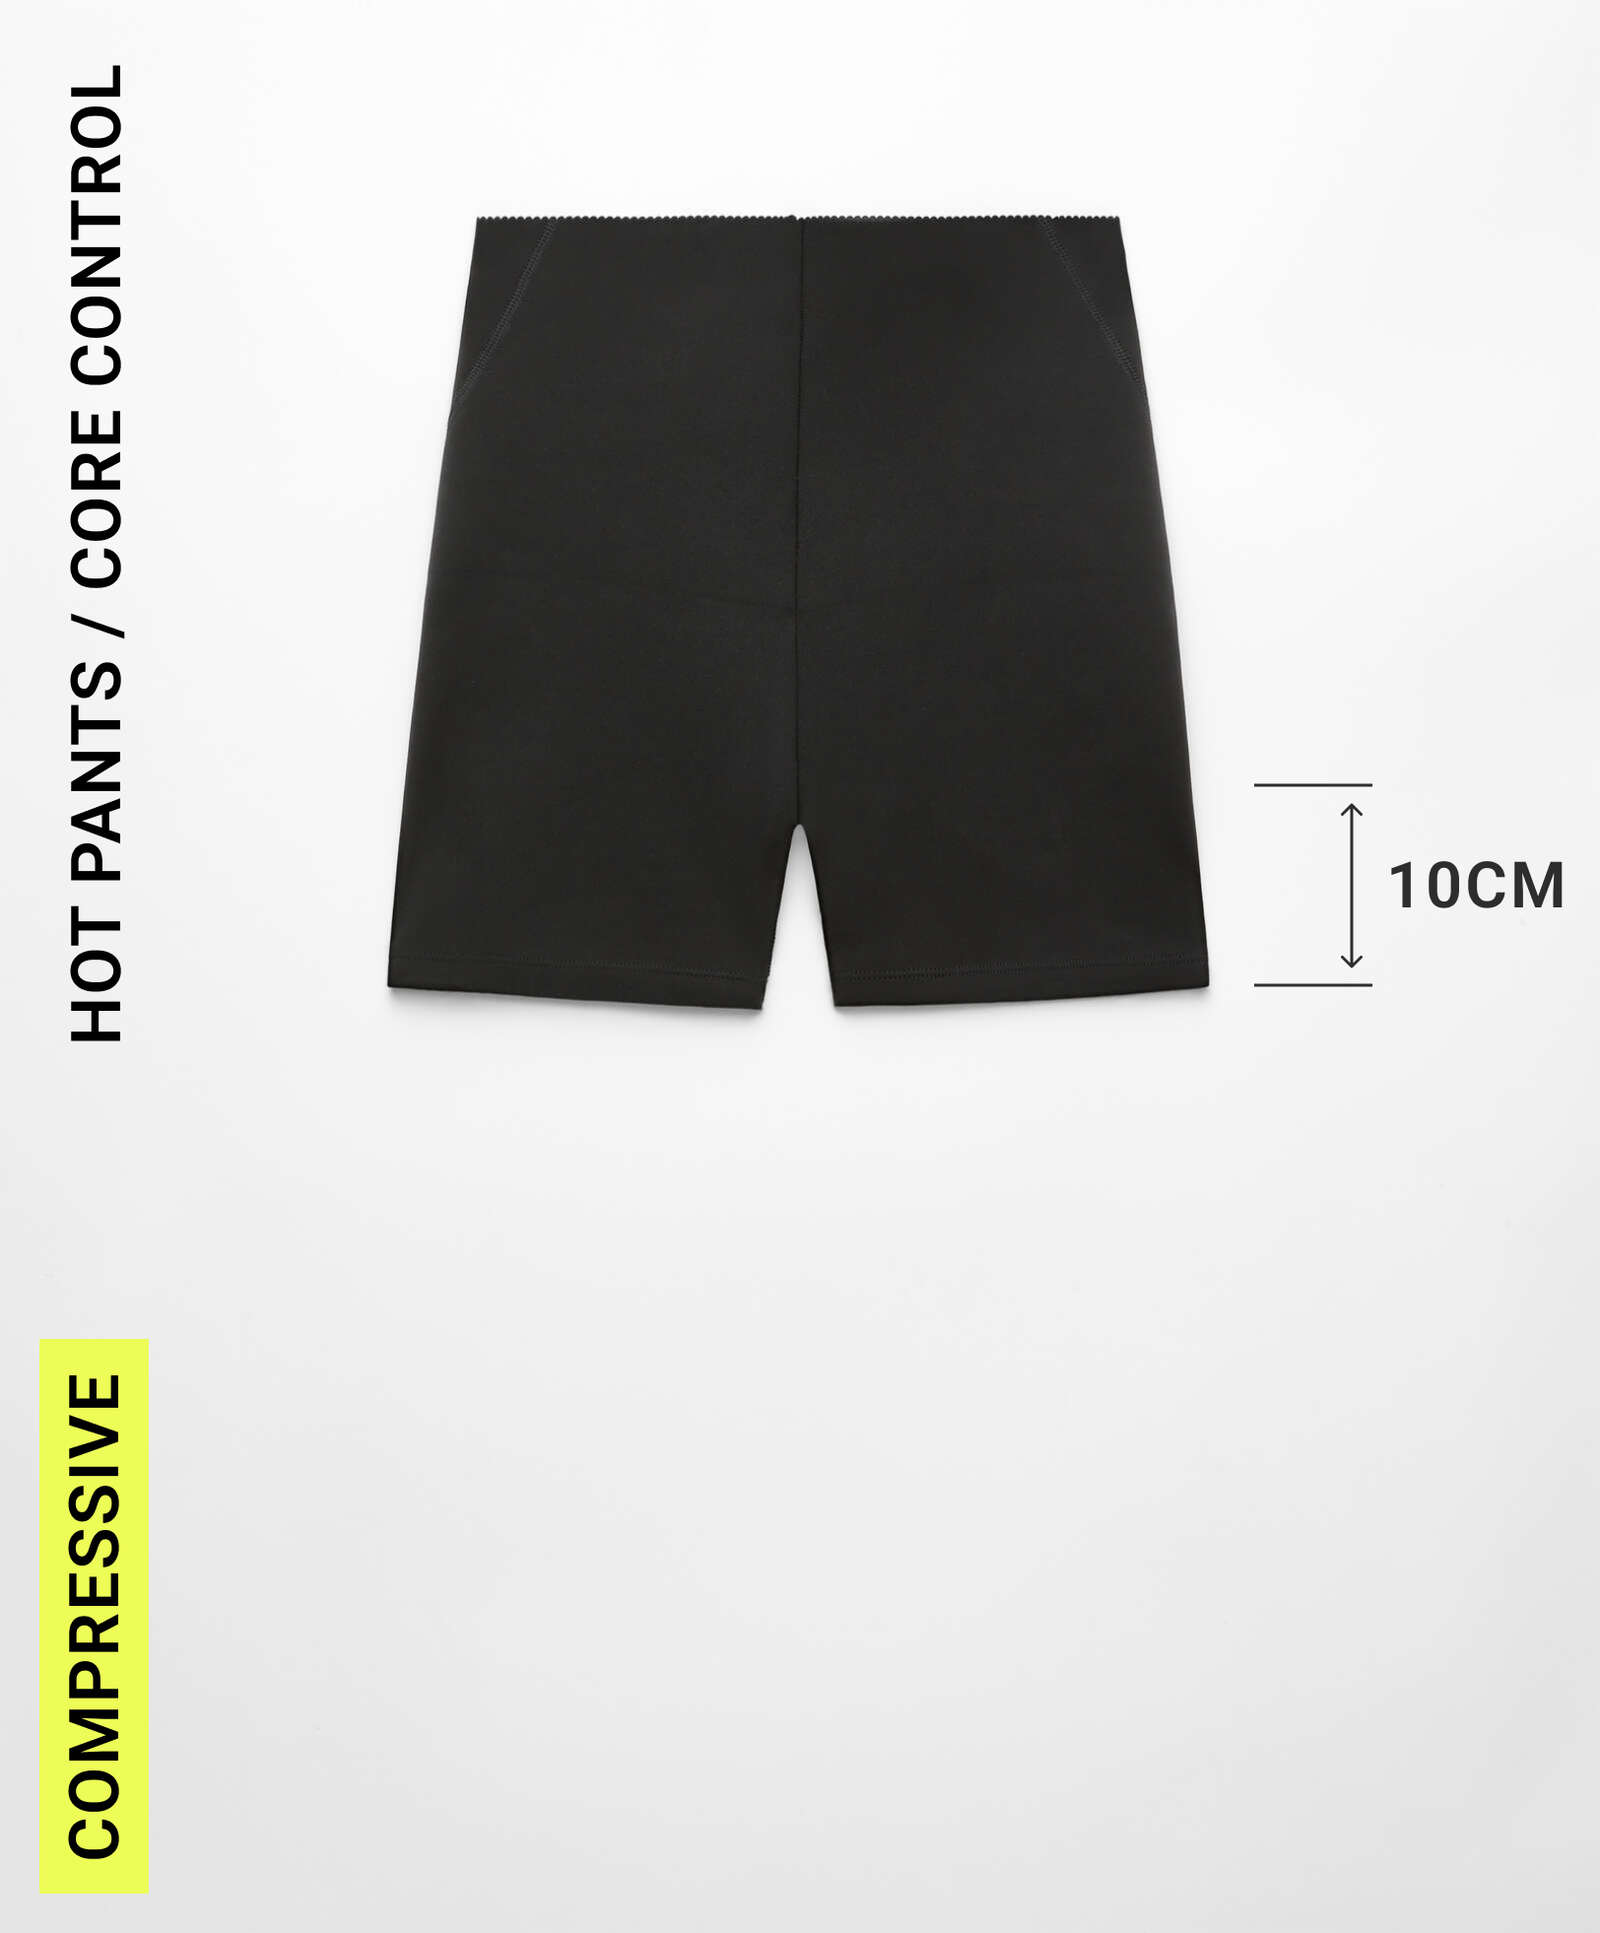 Hot pants Compressive core control 10 cm